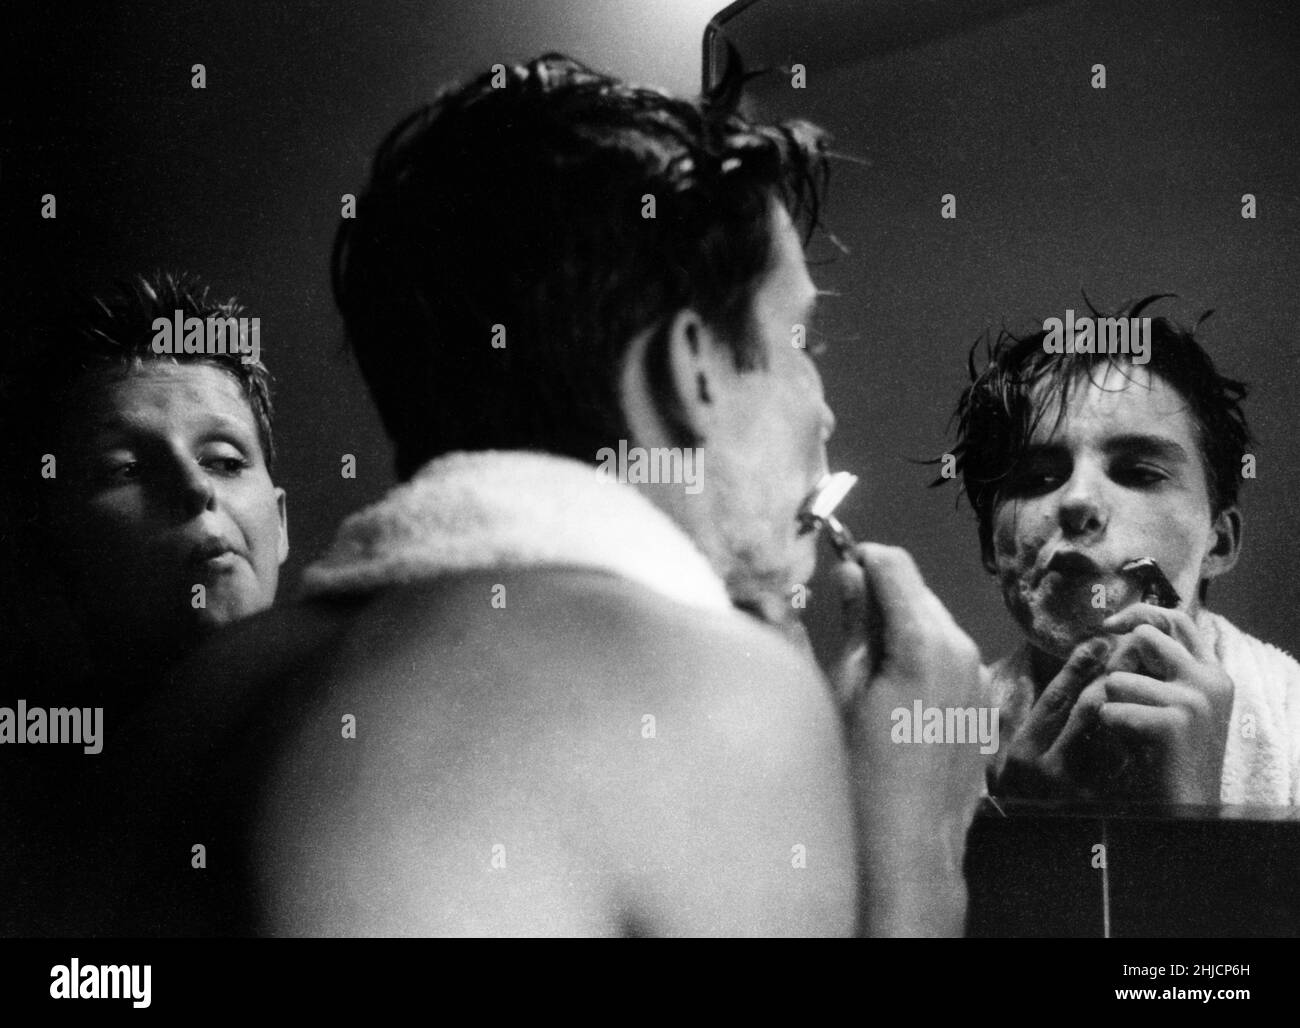 Un jeune garçon regardant son frère aîné se raser avec soin.Vers 1958. Banque D'Images